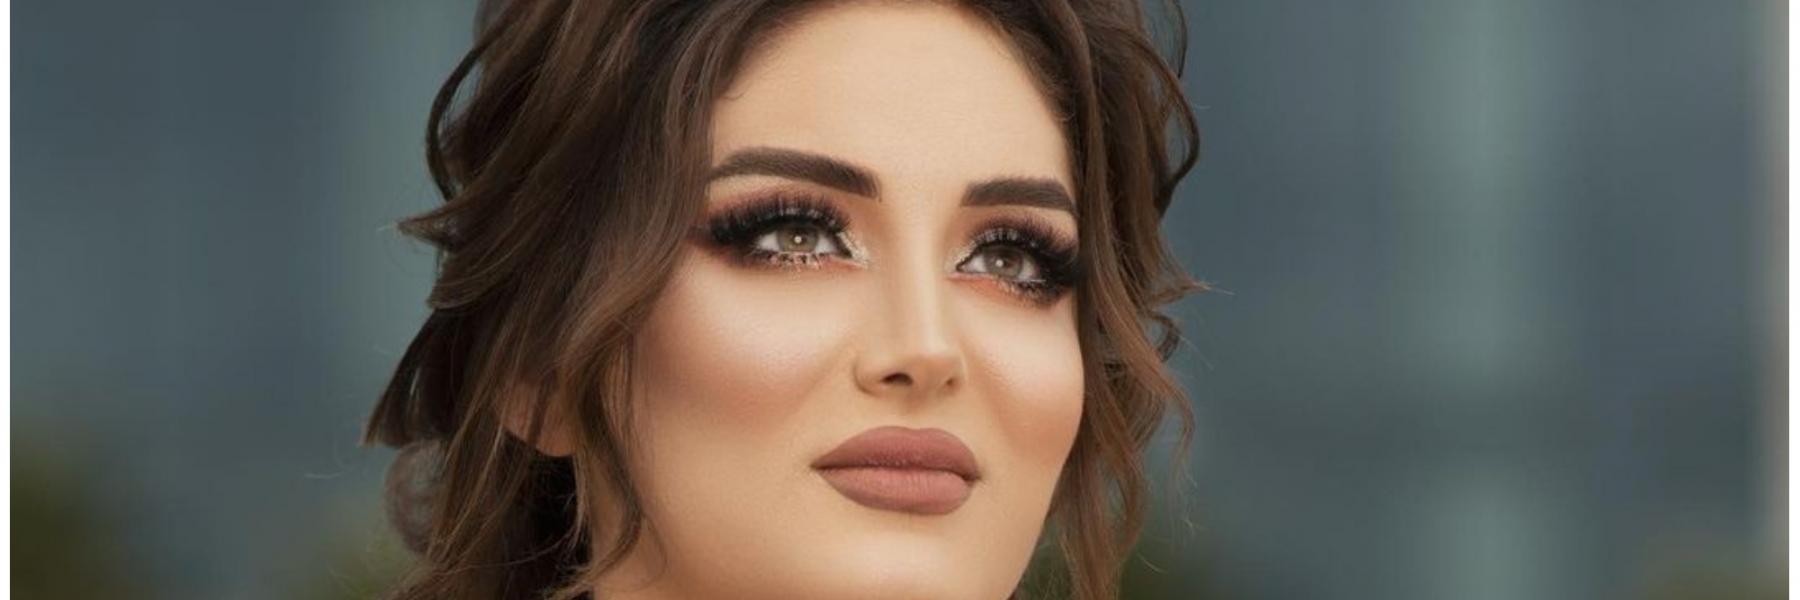 ملكة جمال العراق